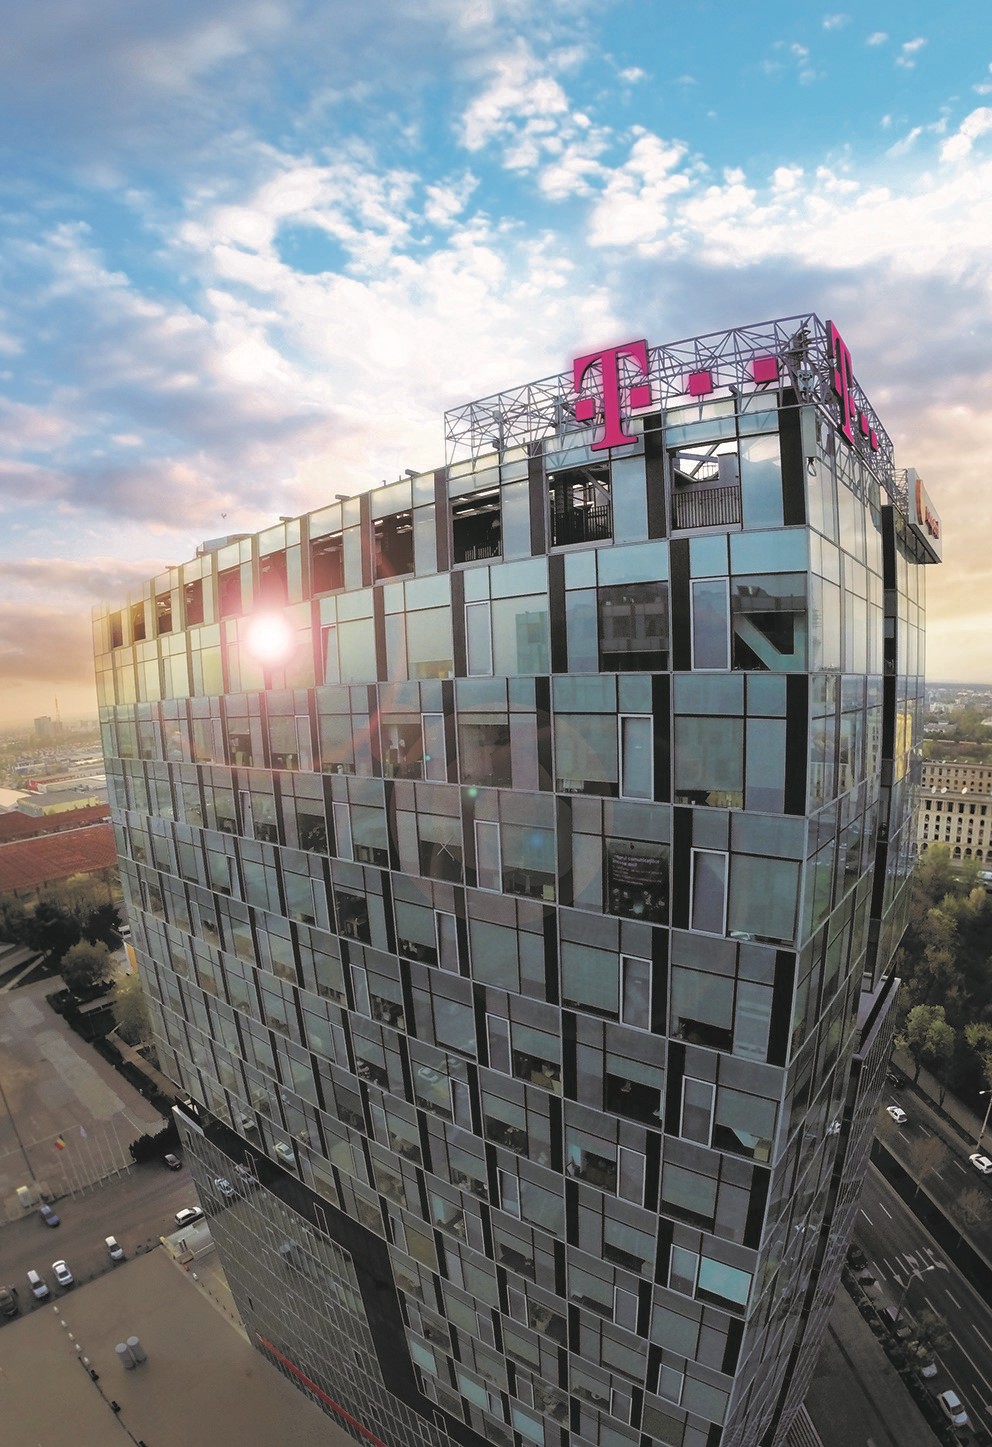 Grupul Telekom România stă încă 5 ani în proiectul City Gate din Piaţa Presei. Contractul de preînchiriere cu Papalekas pentru Globalworth Campus, sub semnul întrebării